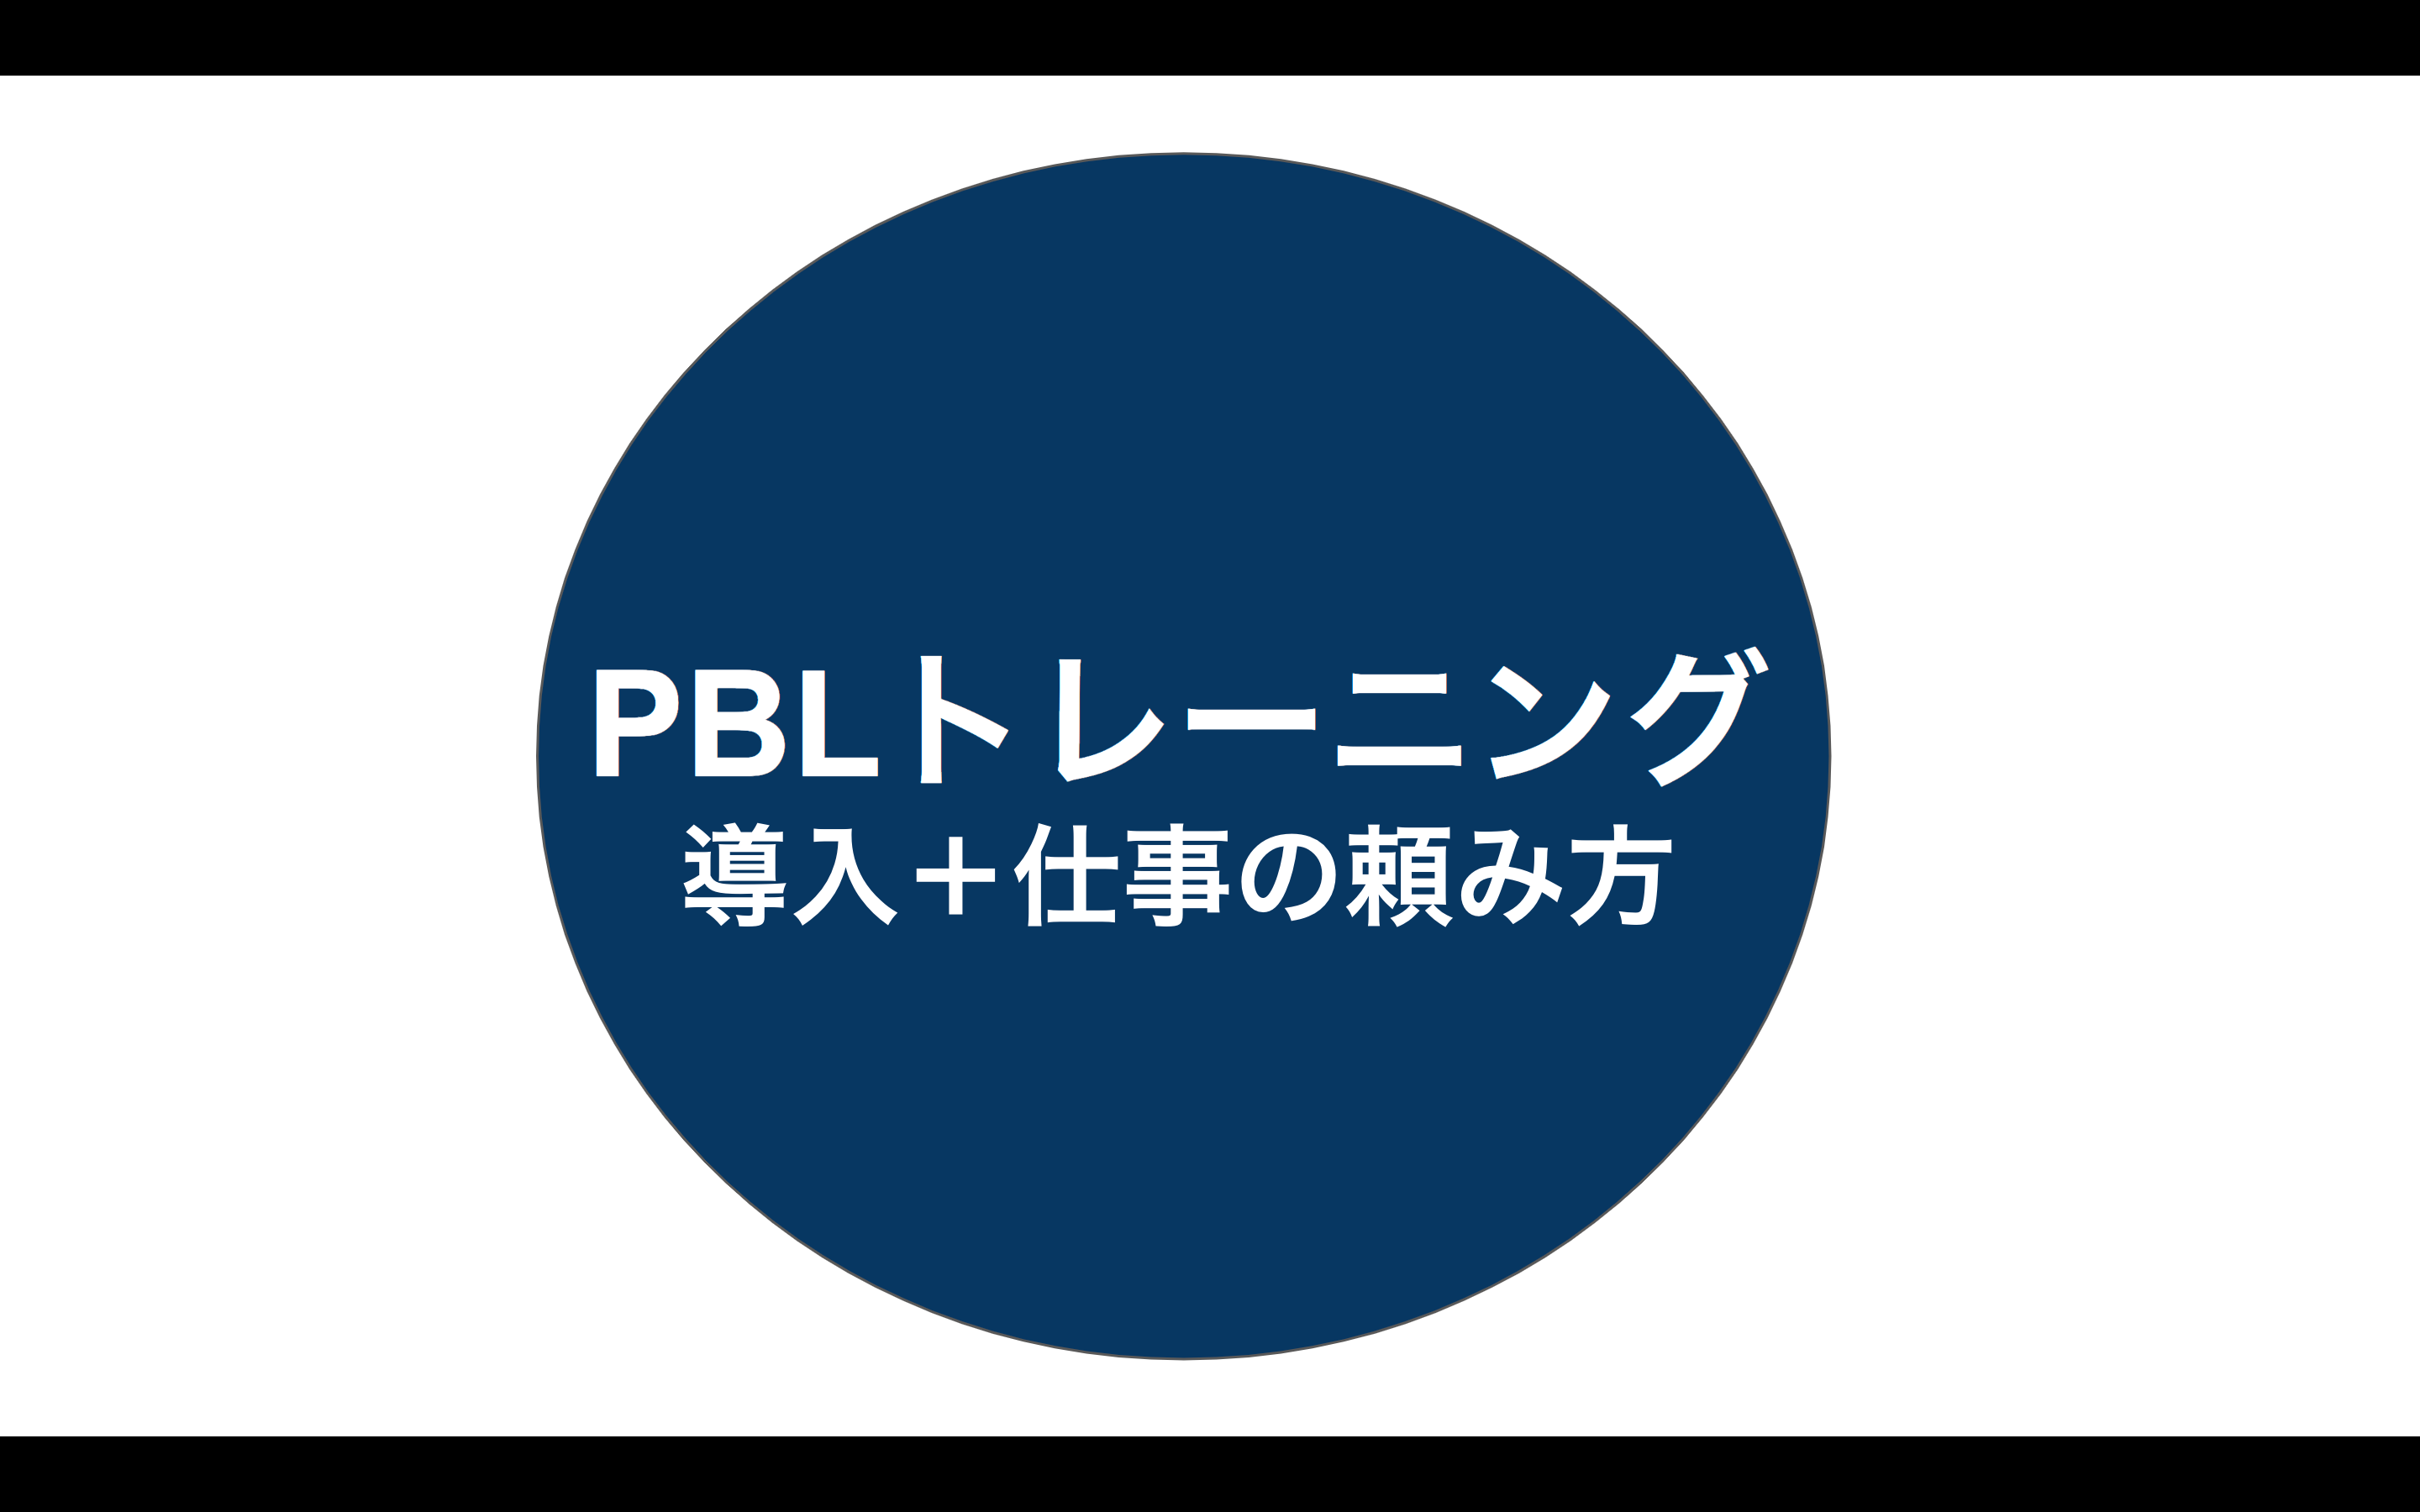 【大宮】【講義紹介】 社会で必要な知識・教養を身につける「PBLトレーニング」の学び